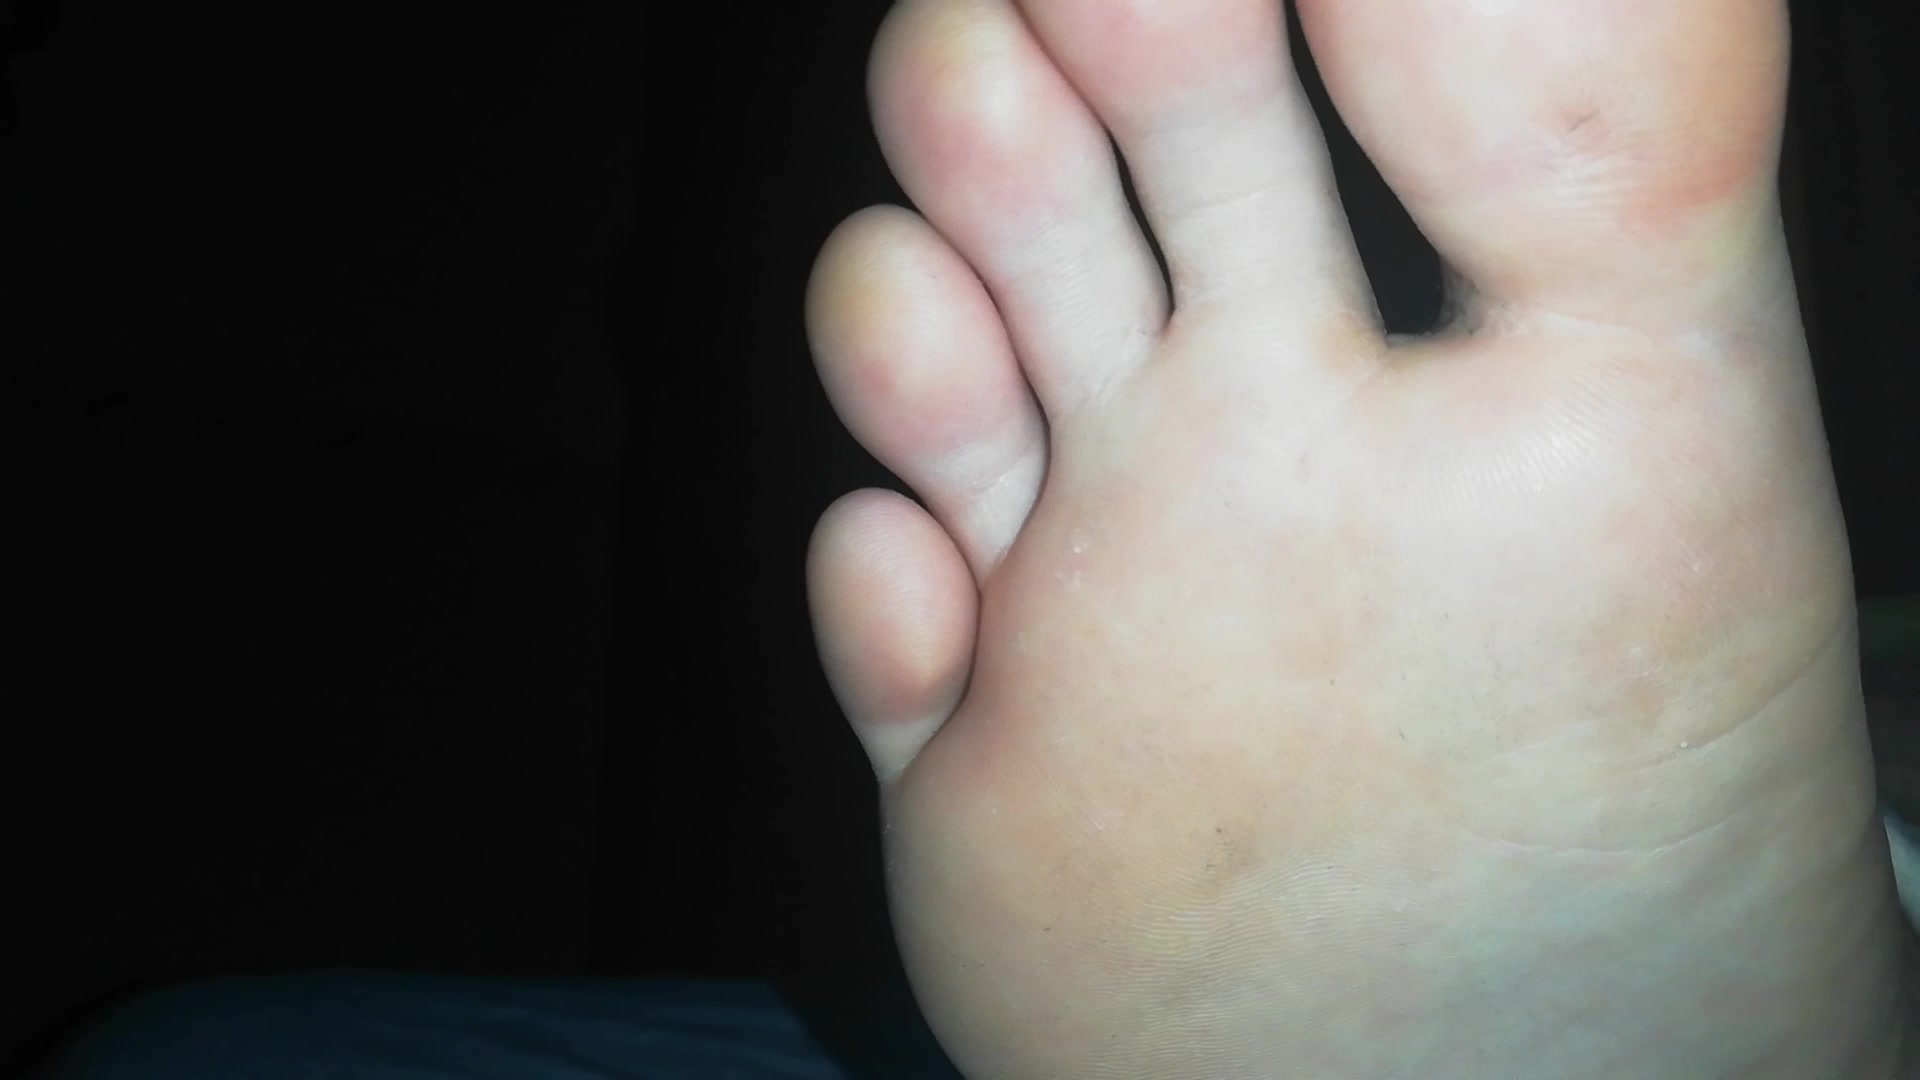 My cousin' s feet